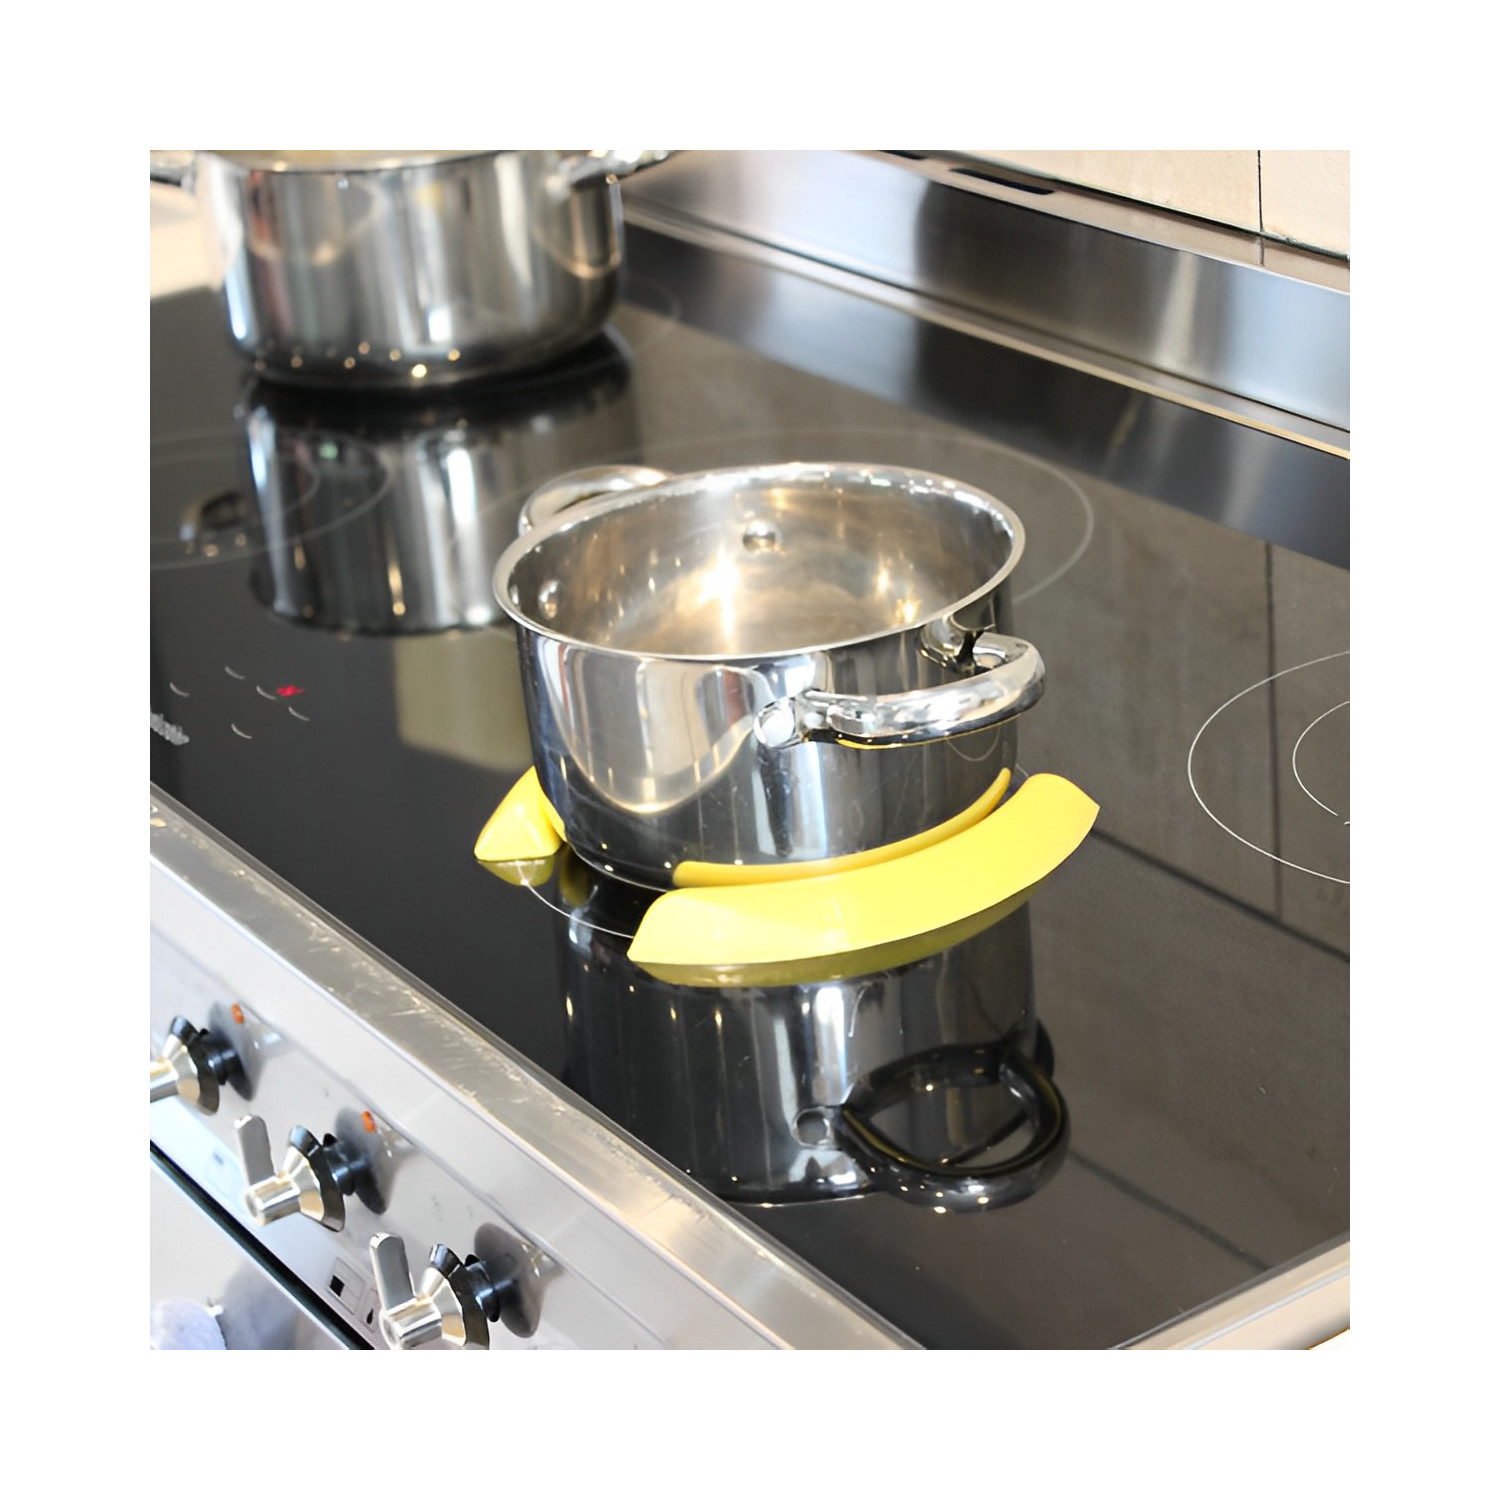 Guide casserole pour plaque induction